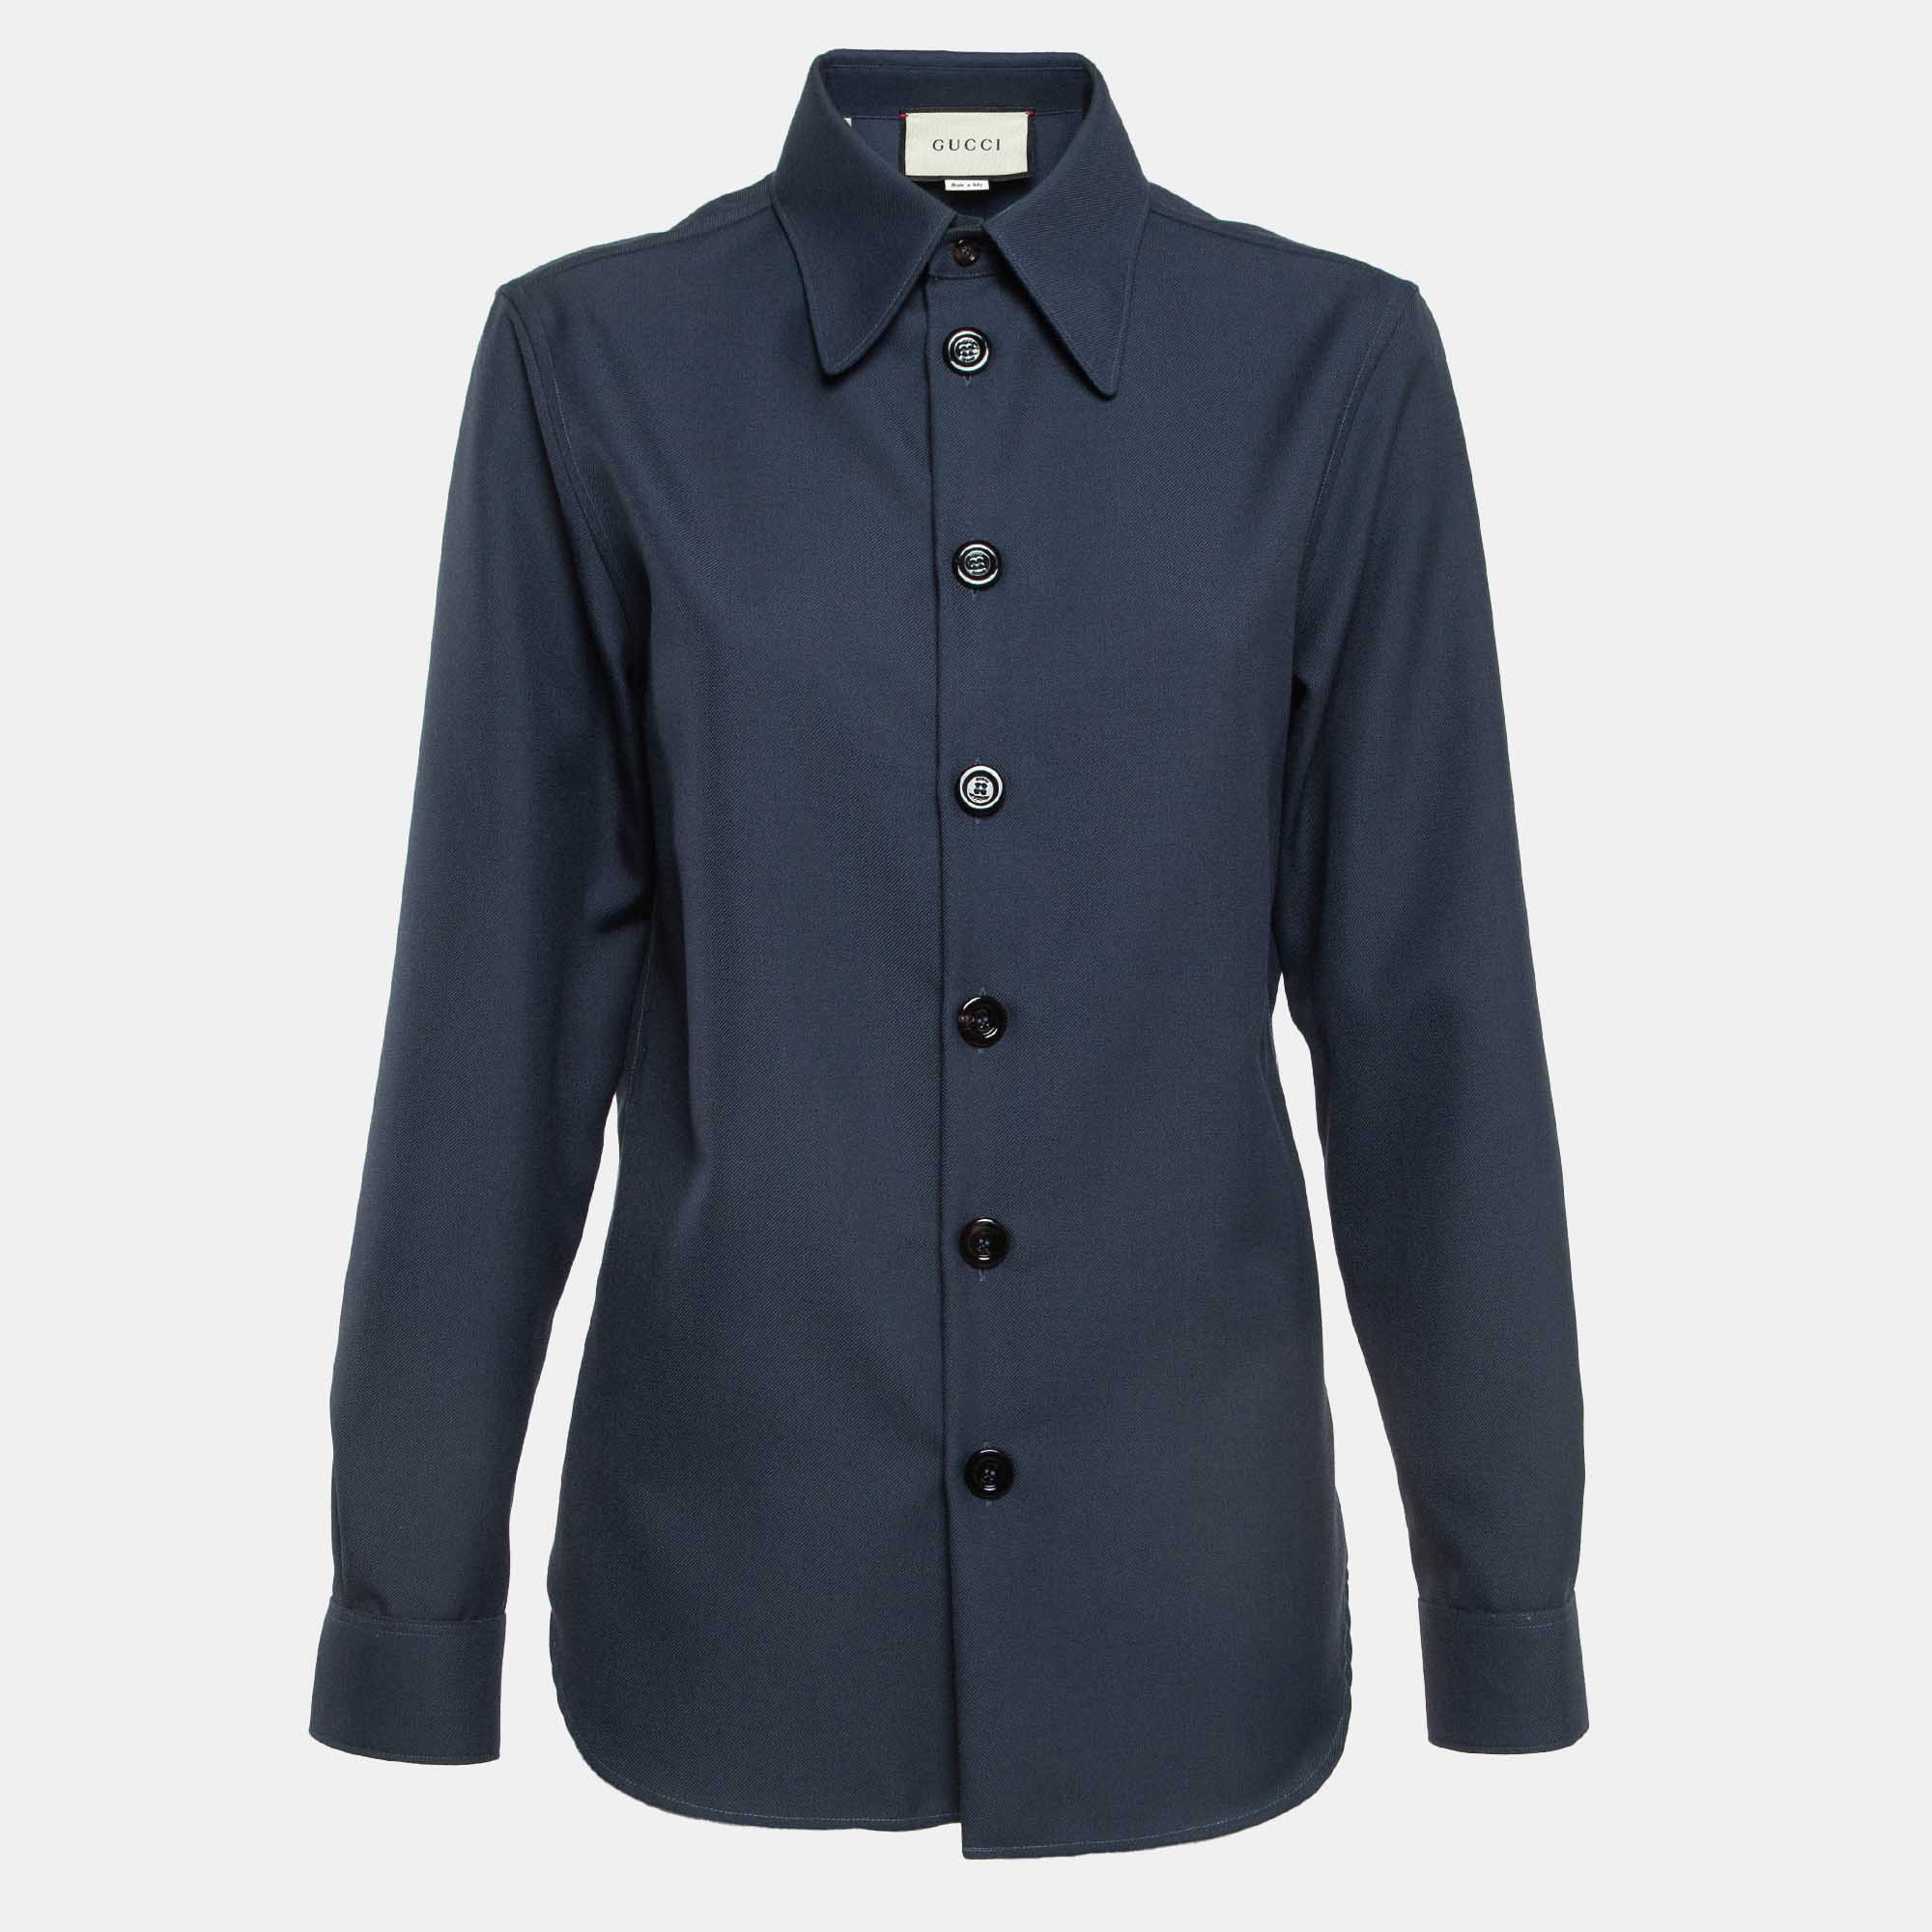 Gucci blue gabardine button front shirt xxs